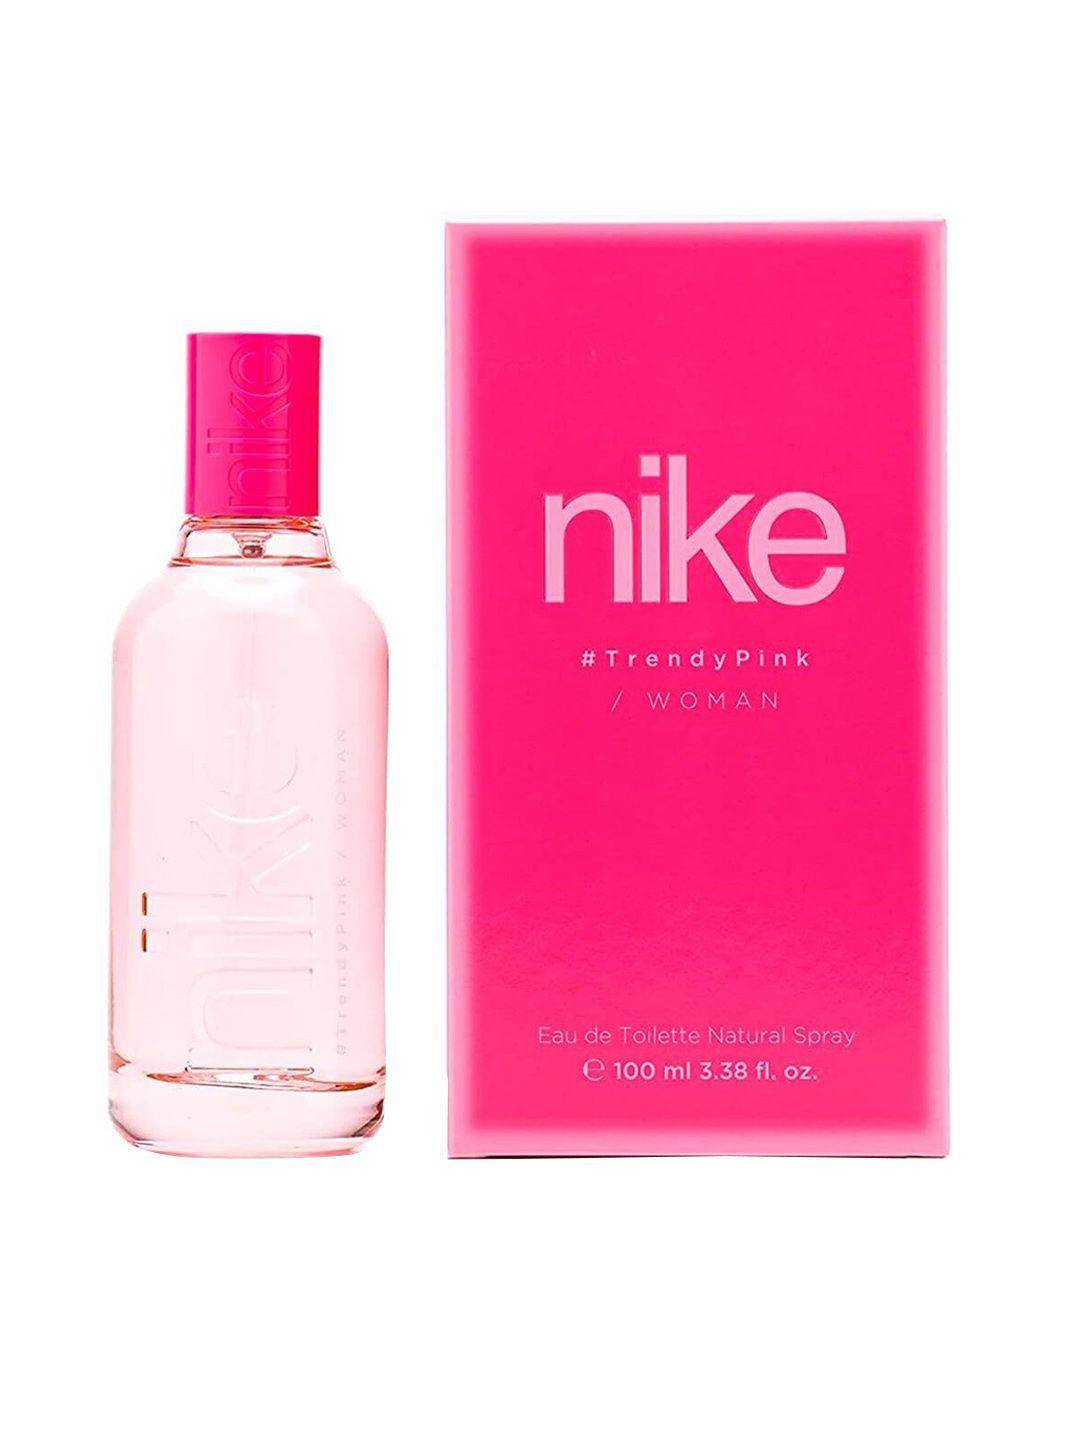 nike-woman-trendy-pink-eau-de-toilette-natural-spray-100ml